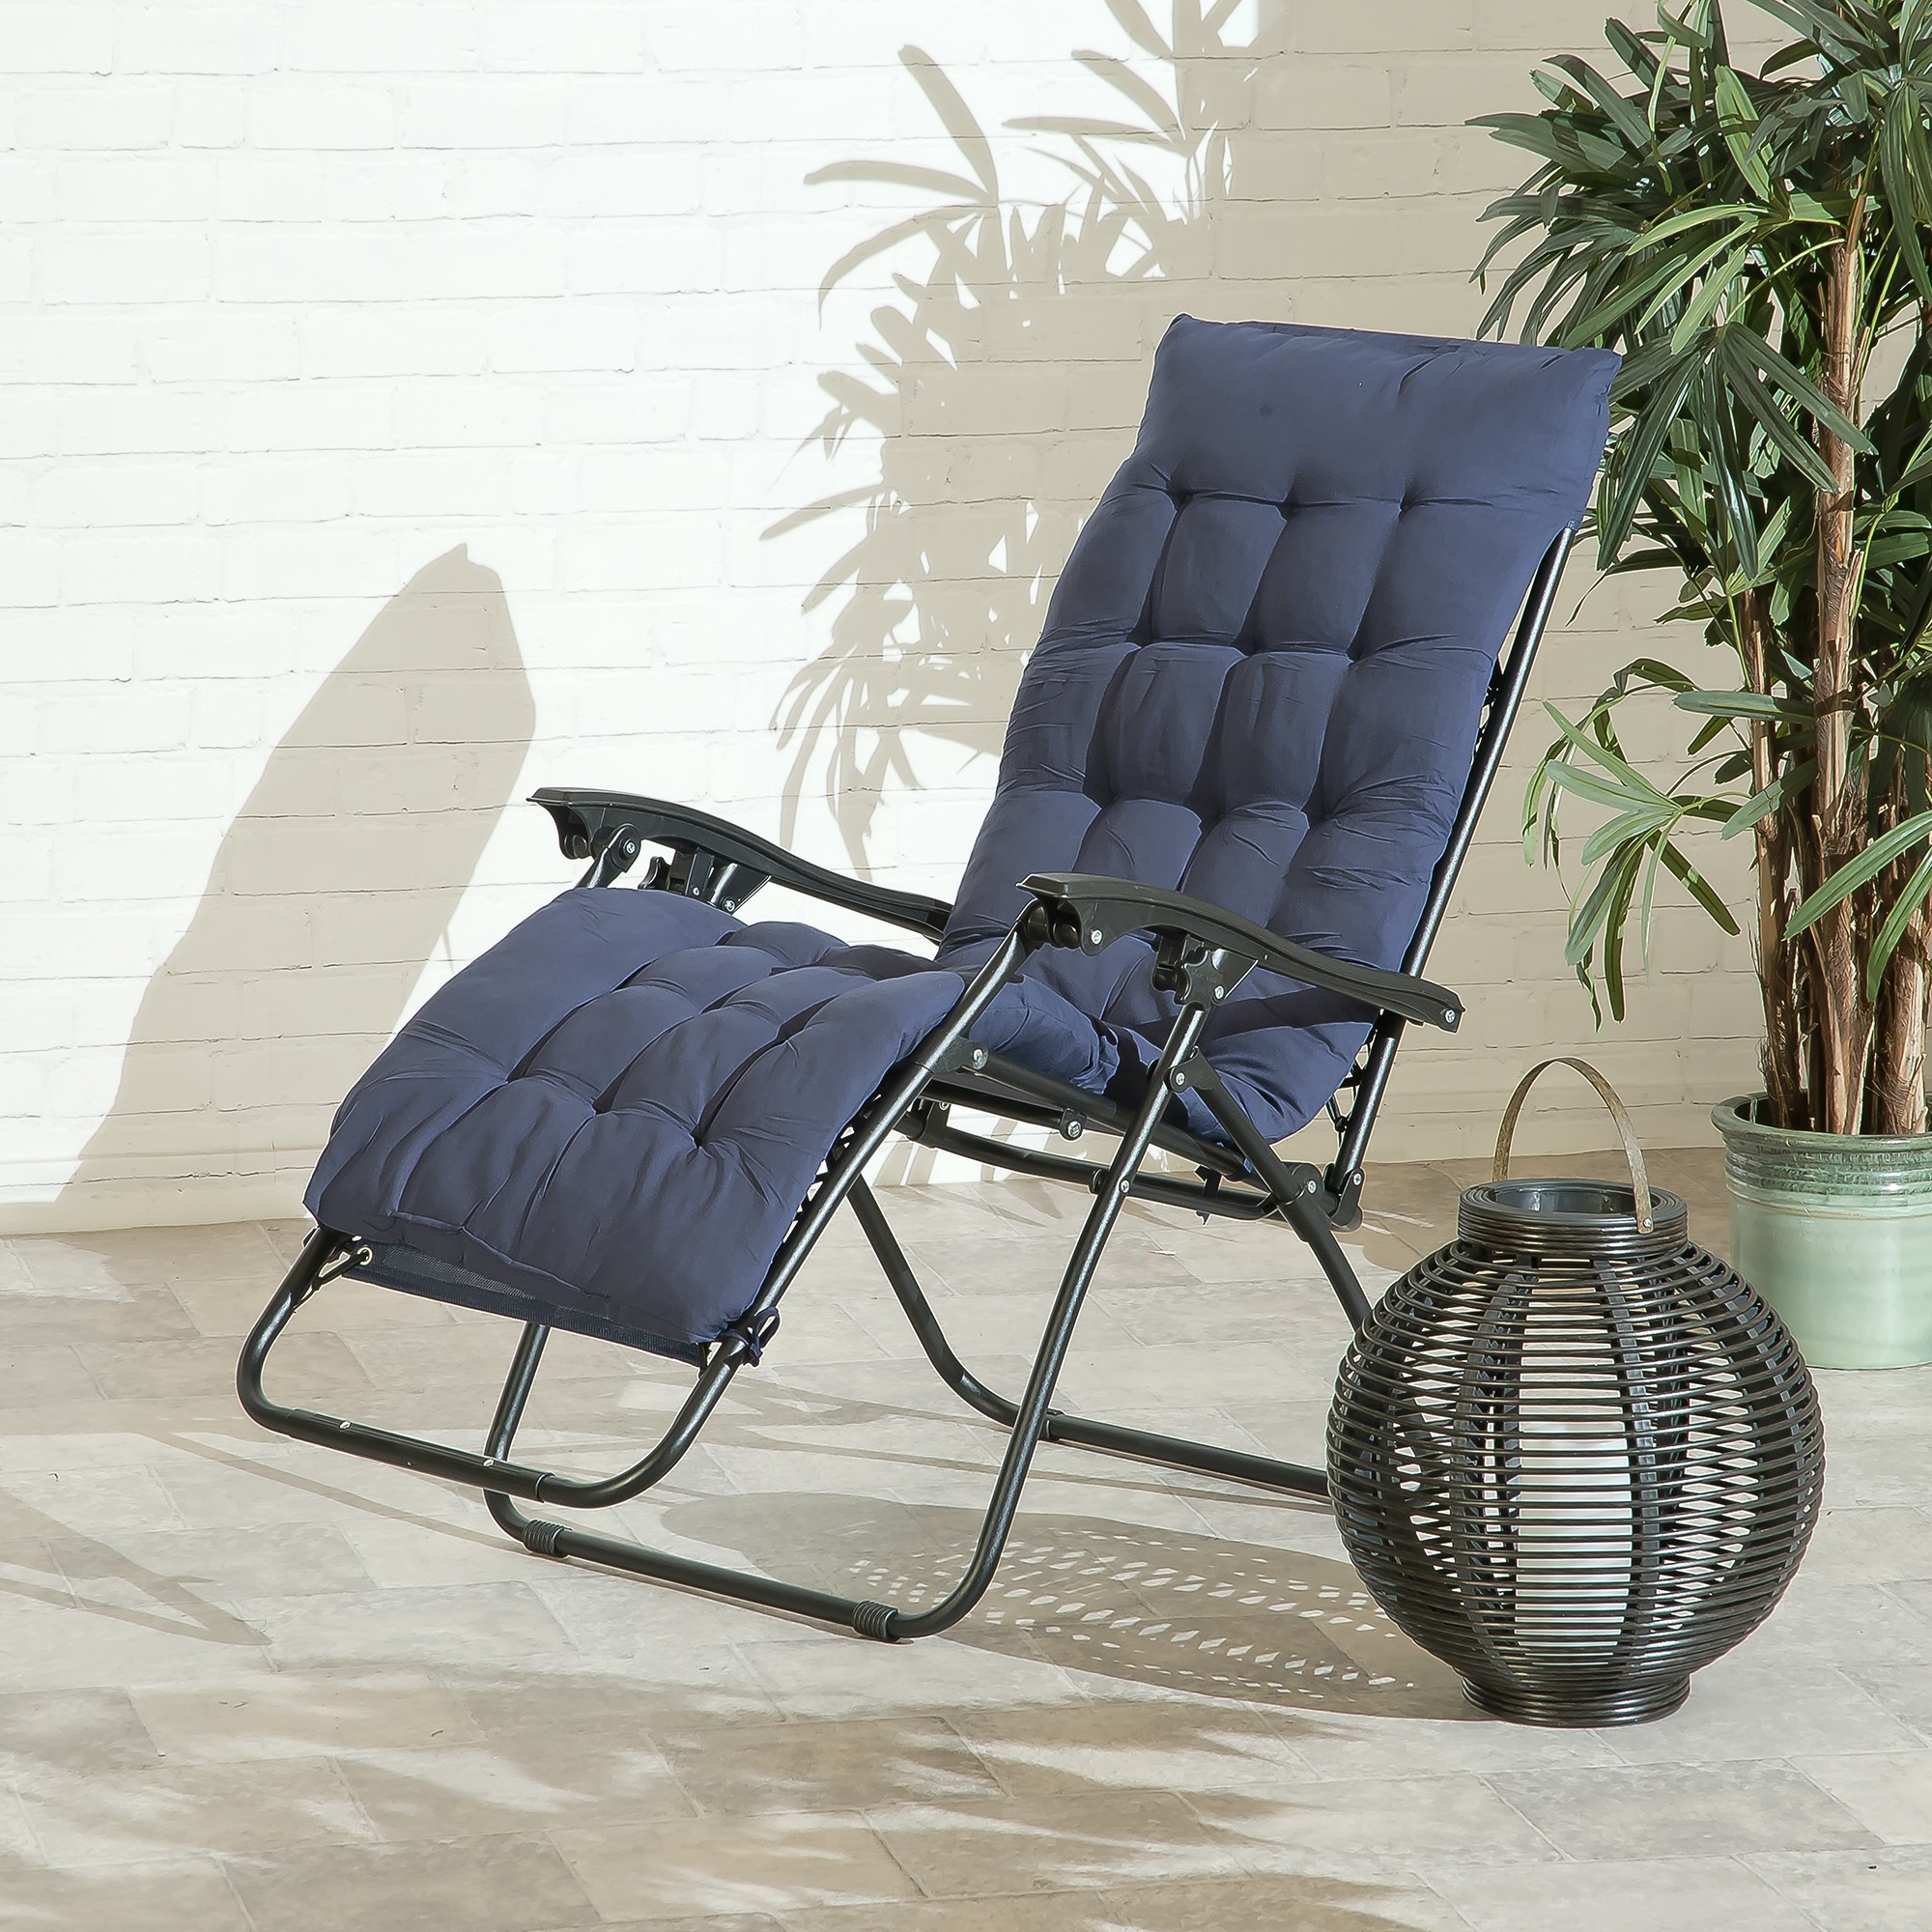 Royal Relaxer Garden Chair